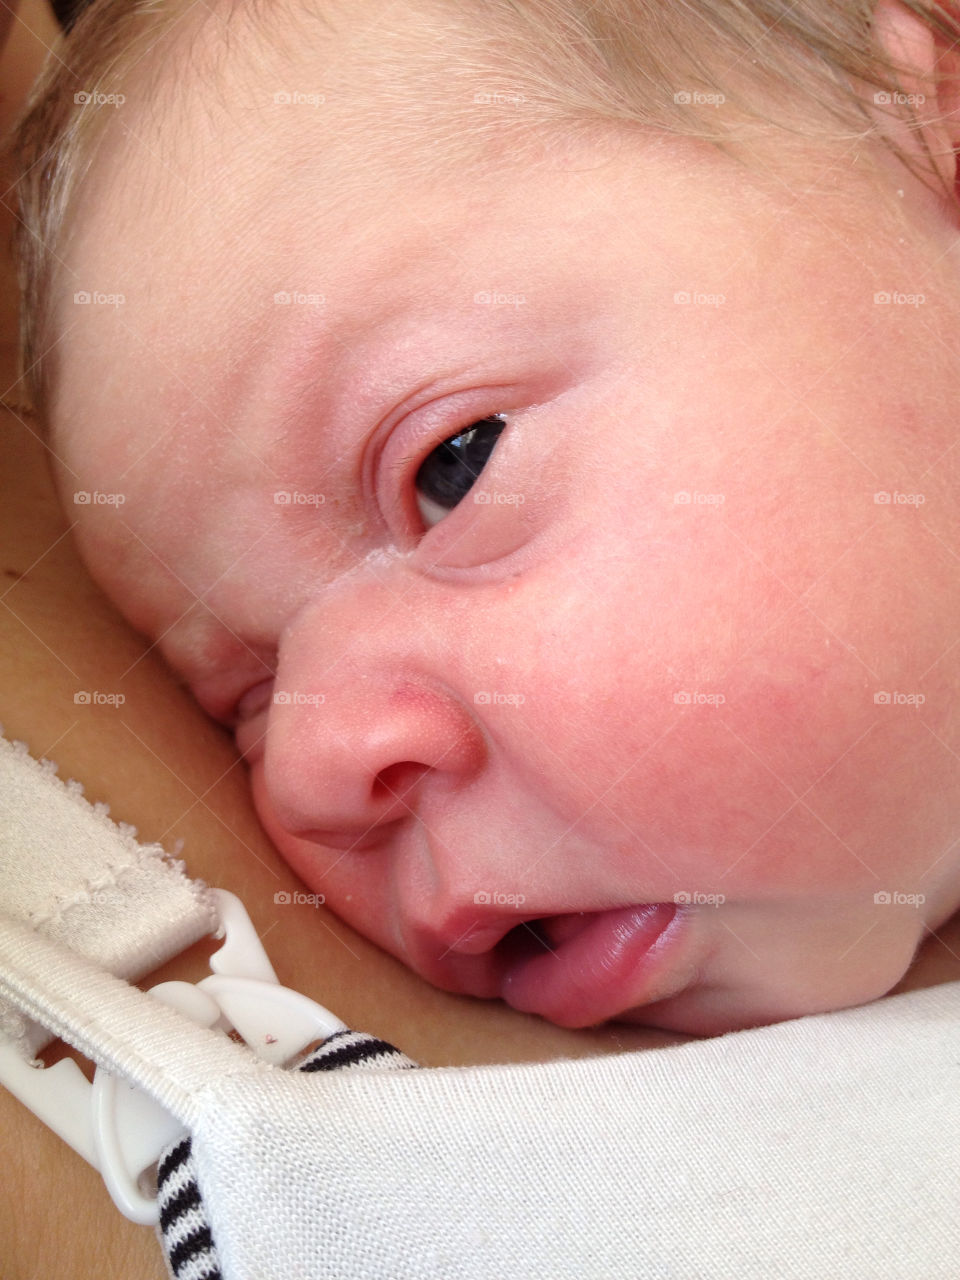 baby eye babyface newborned by liselott